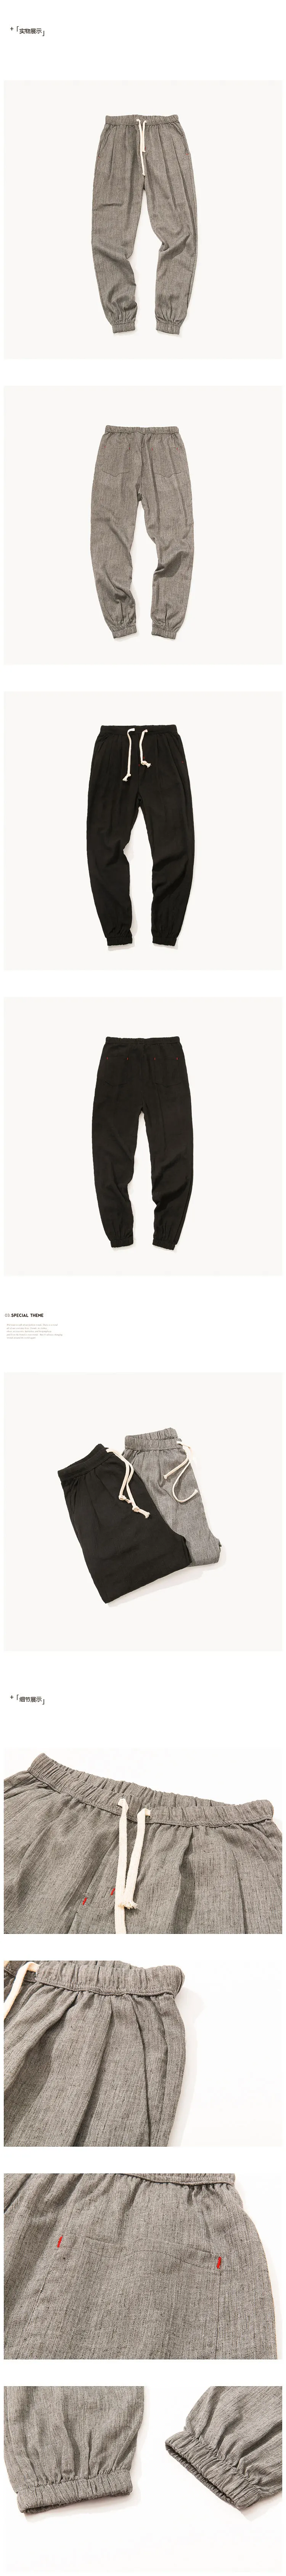 ZOGAA новые брюки Харадзюку повседневные шаровары для мужчин брюки для бега мужские s брюки для бега хип-хоп одноцветные полной длины 5XL